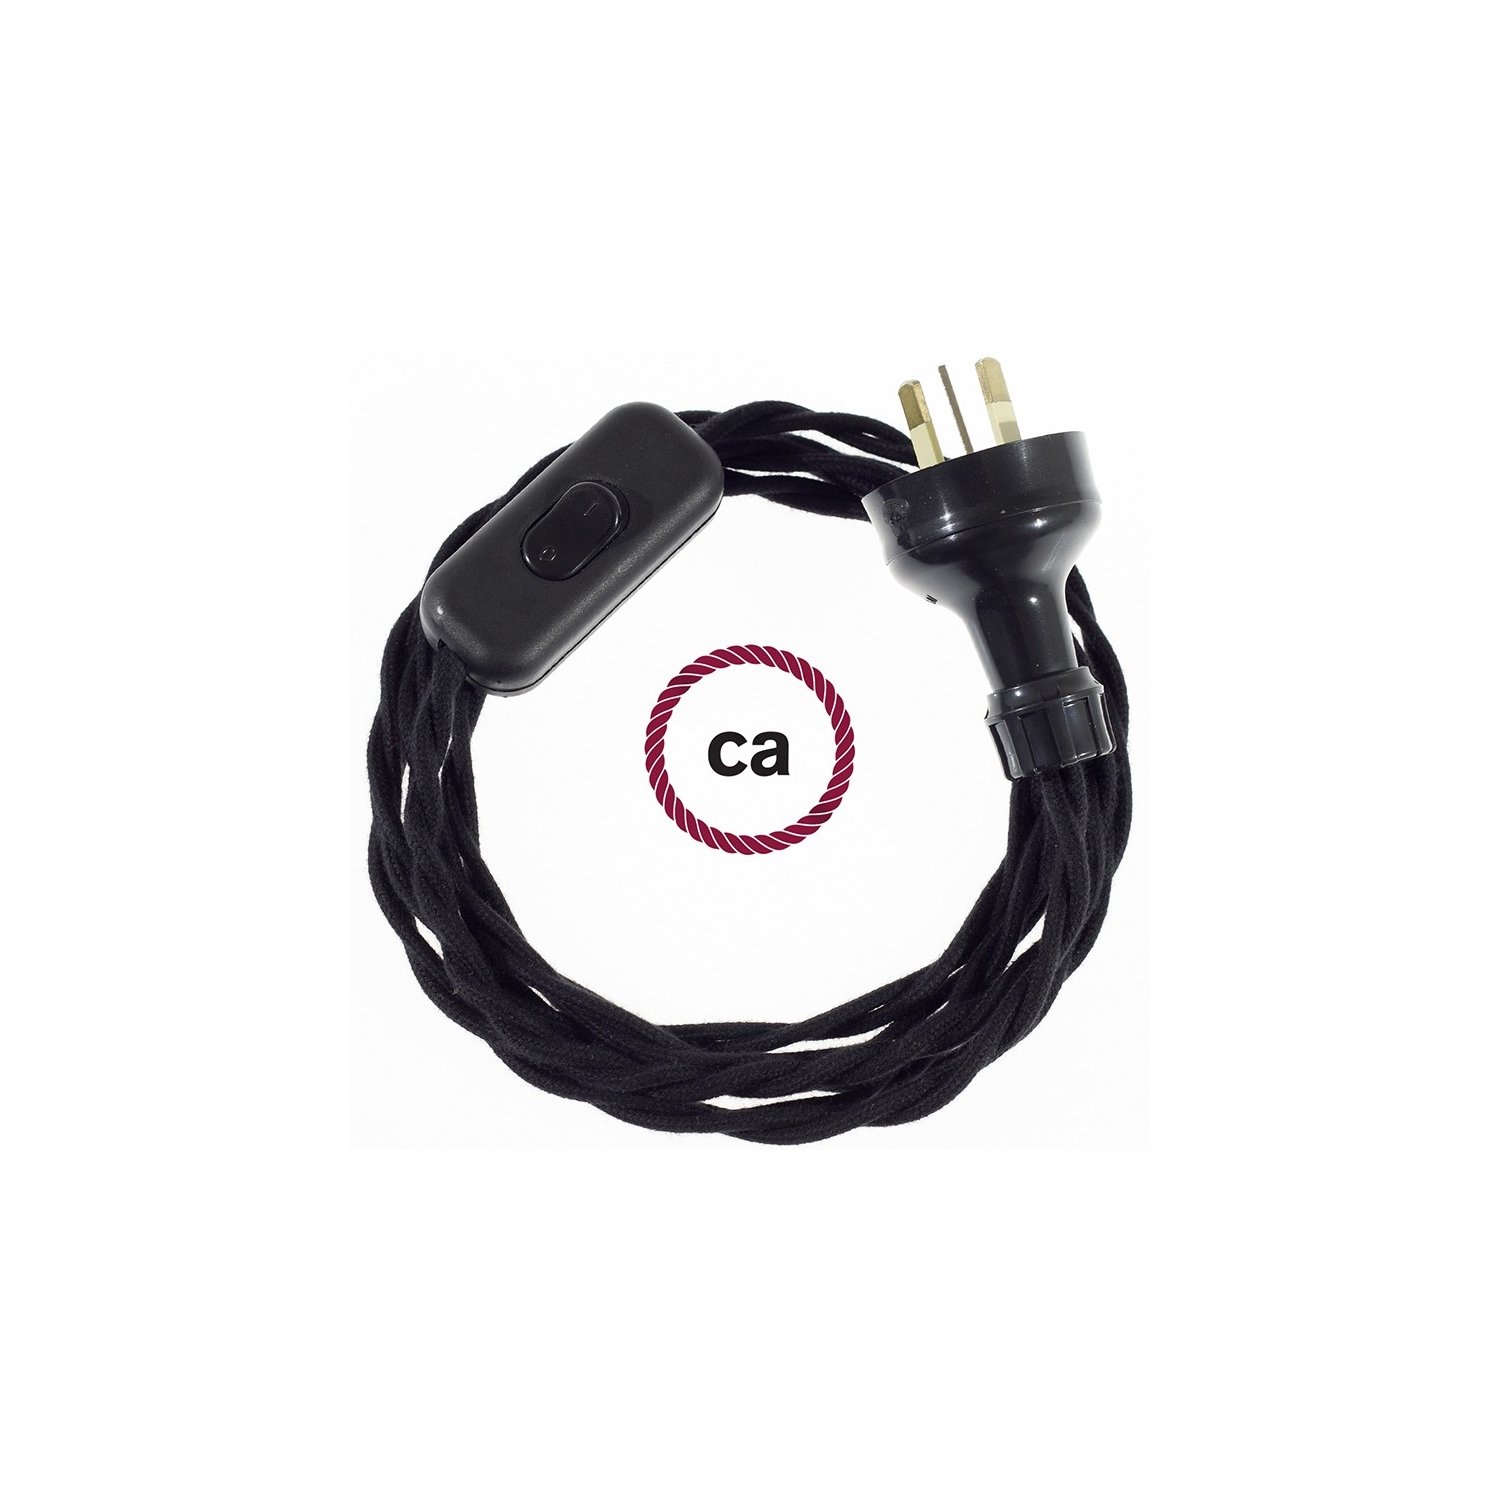 Wiring Black Cotton textile cable TC04 - 1.80 mt